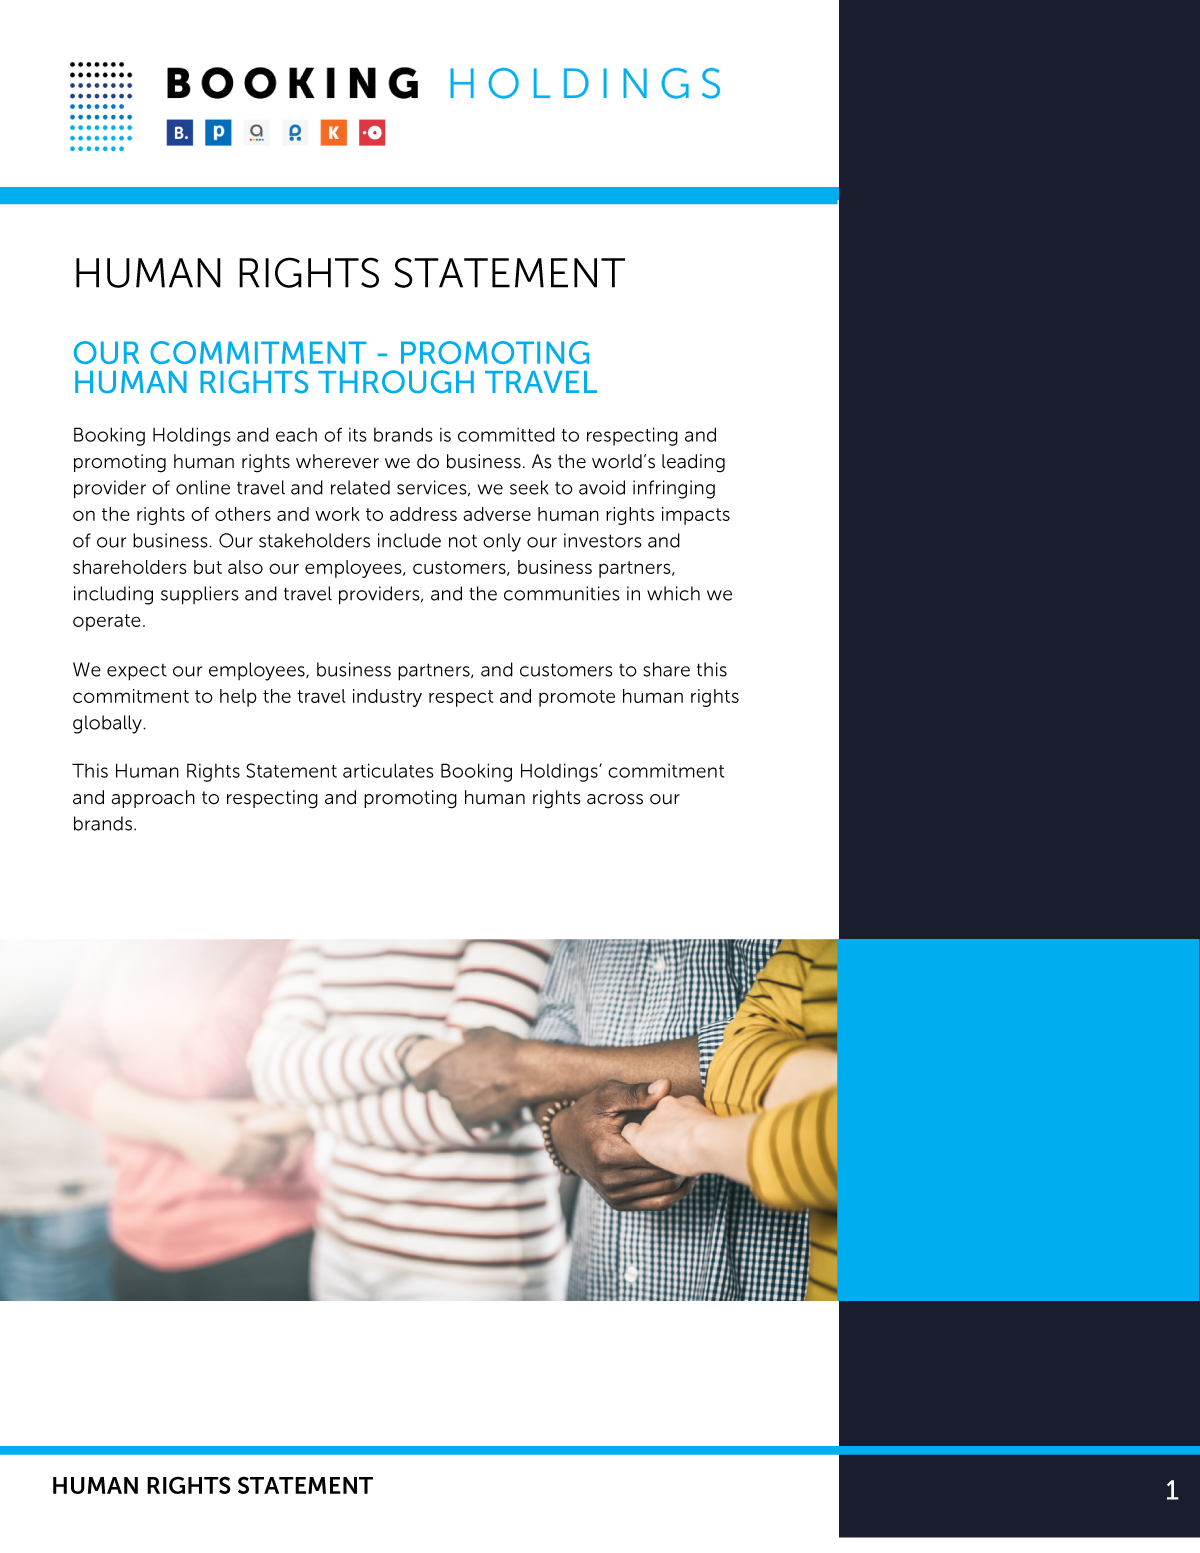 BHI Human Rights Statement pdf